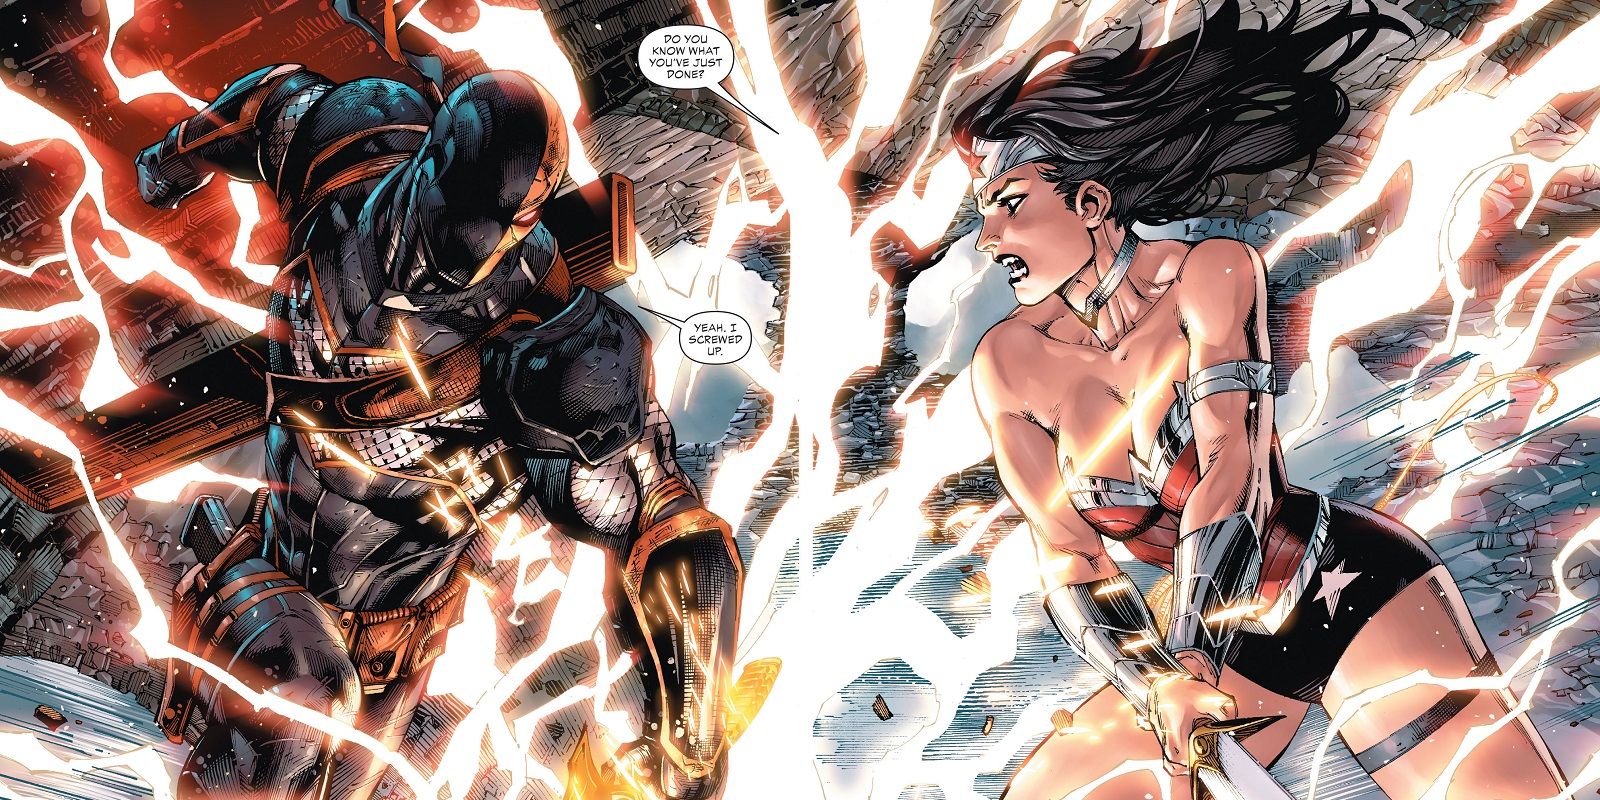 Wonder Woman fights Deathstroke in Deathstroke issue eight